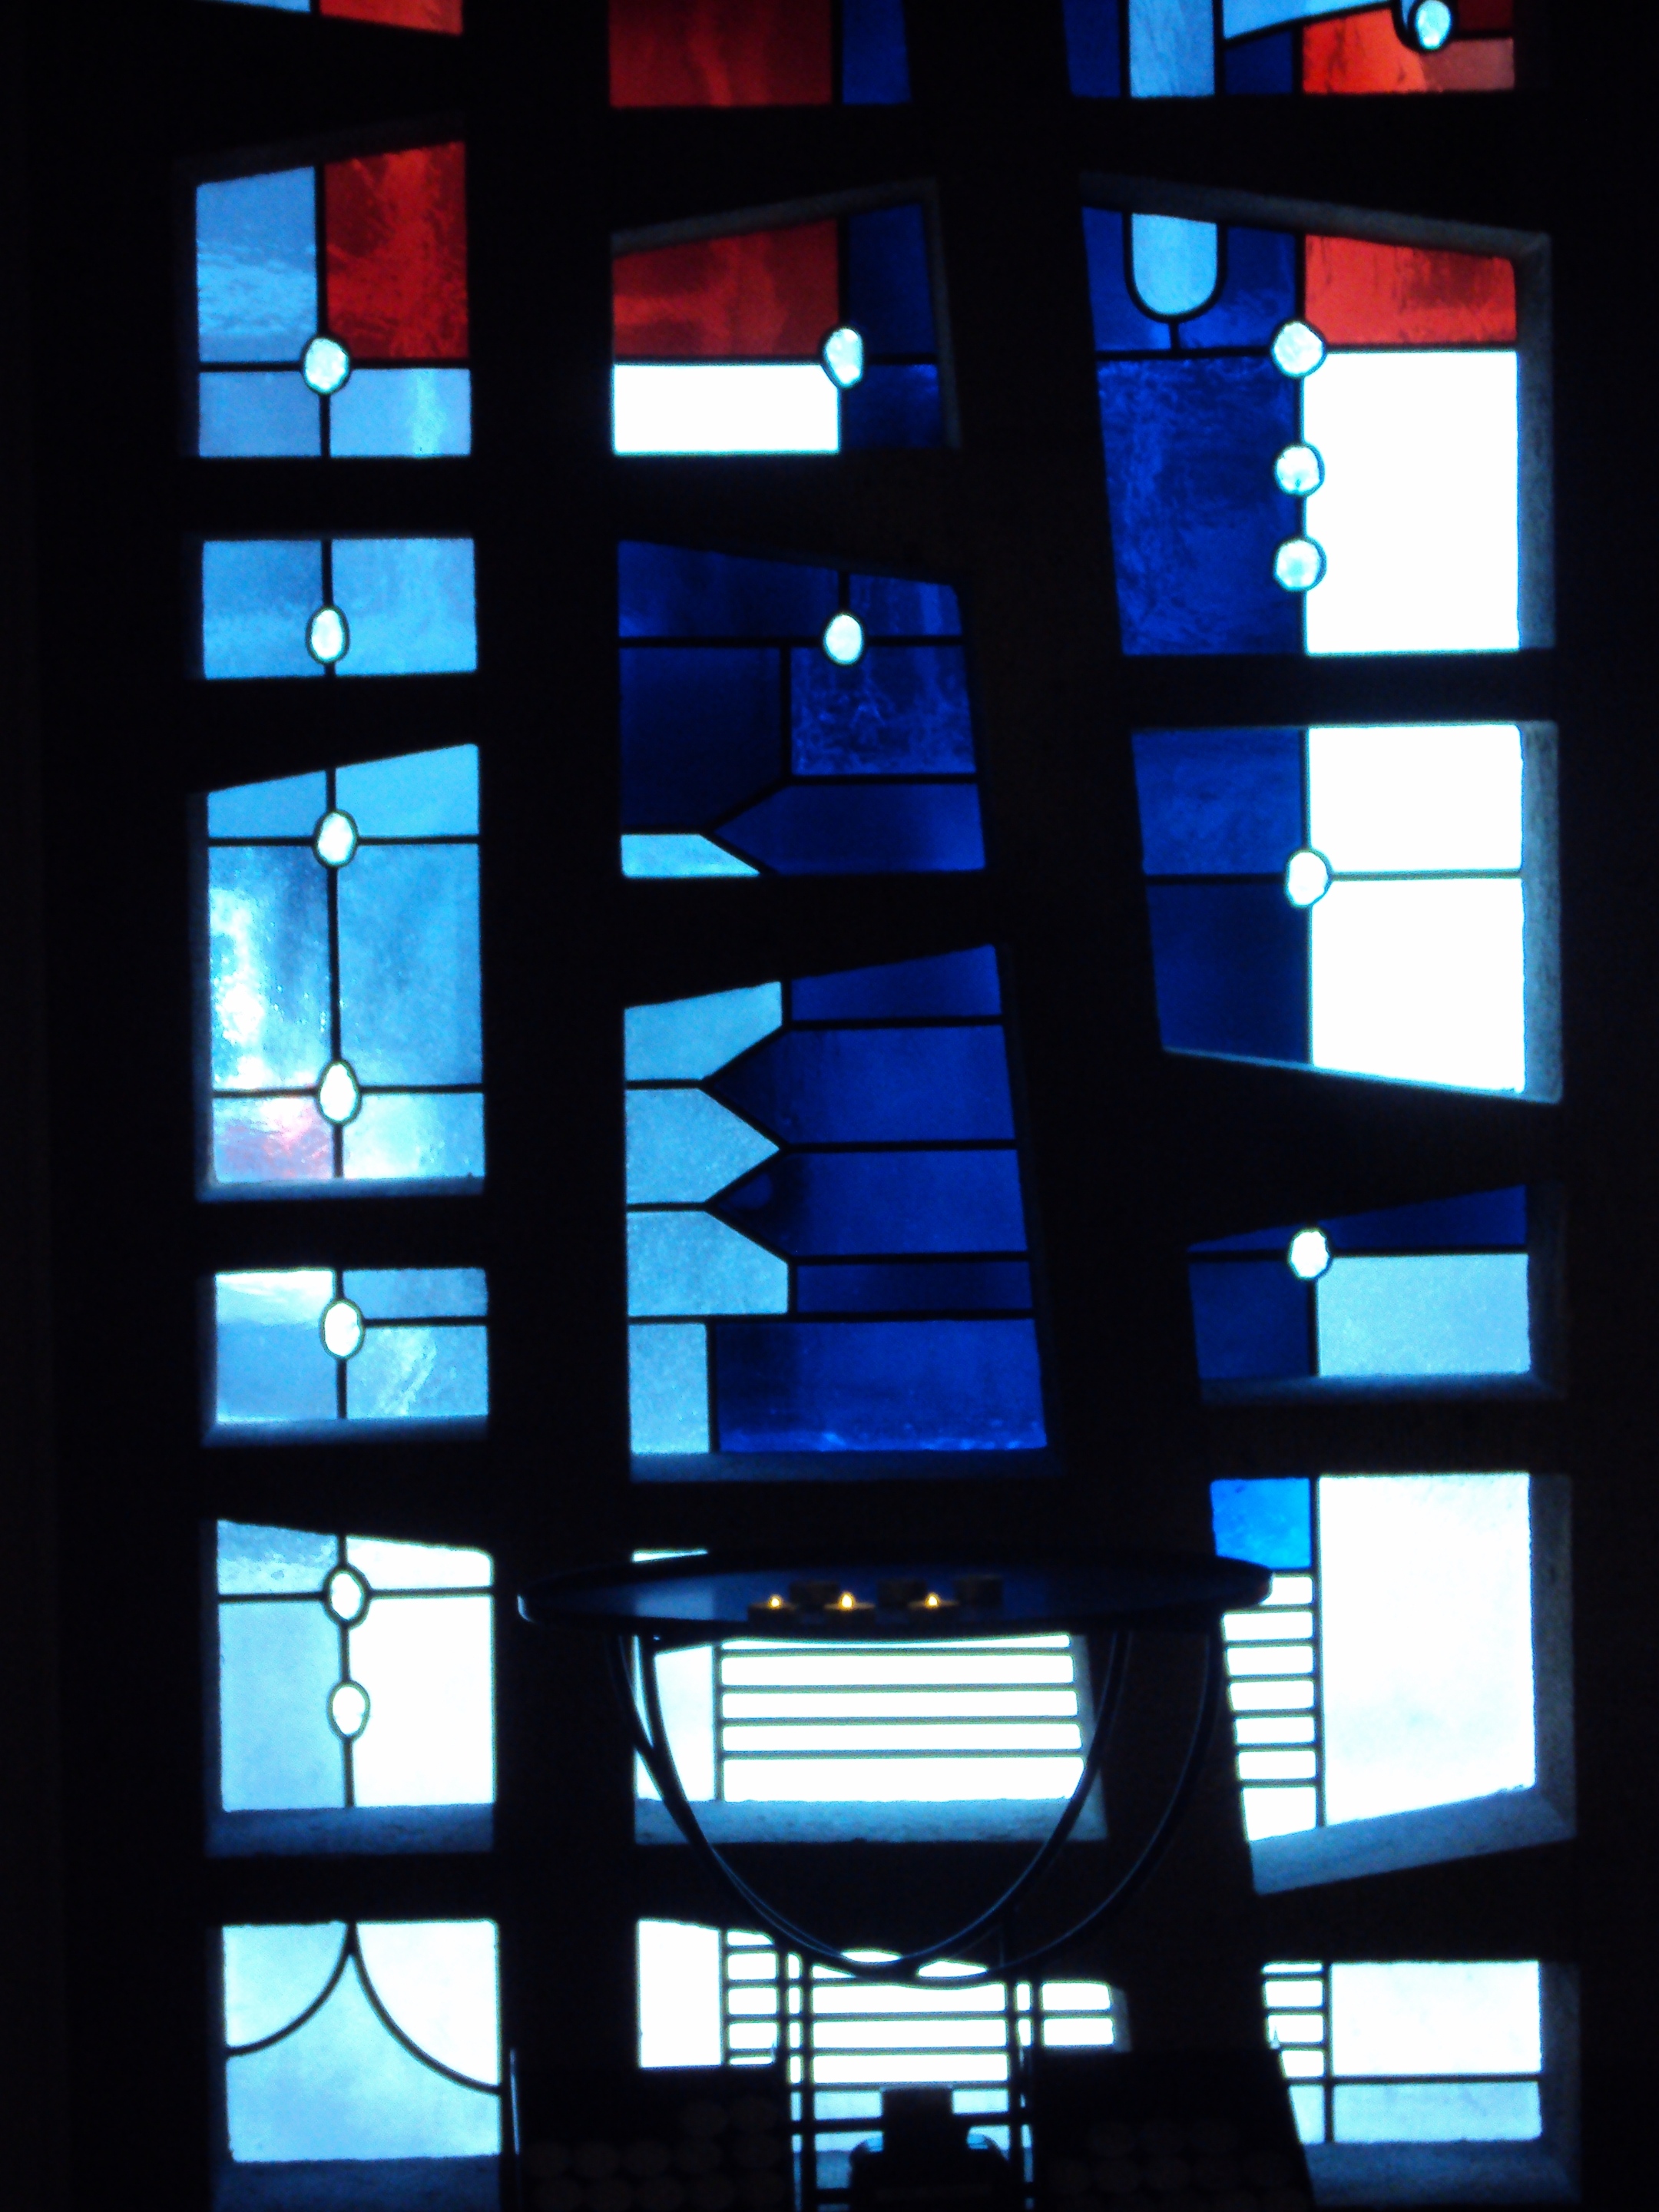 Glasfenster Kapelle